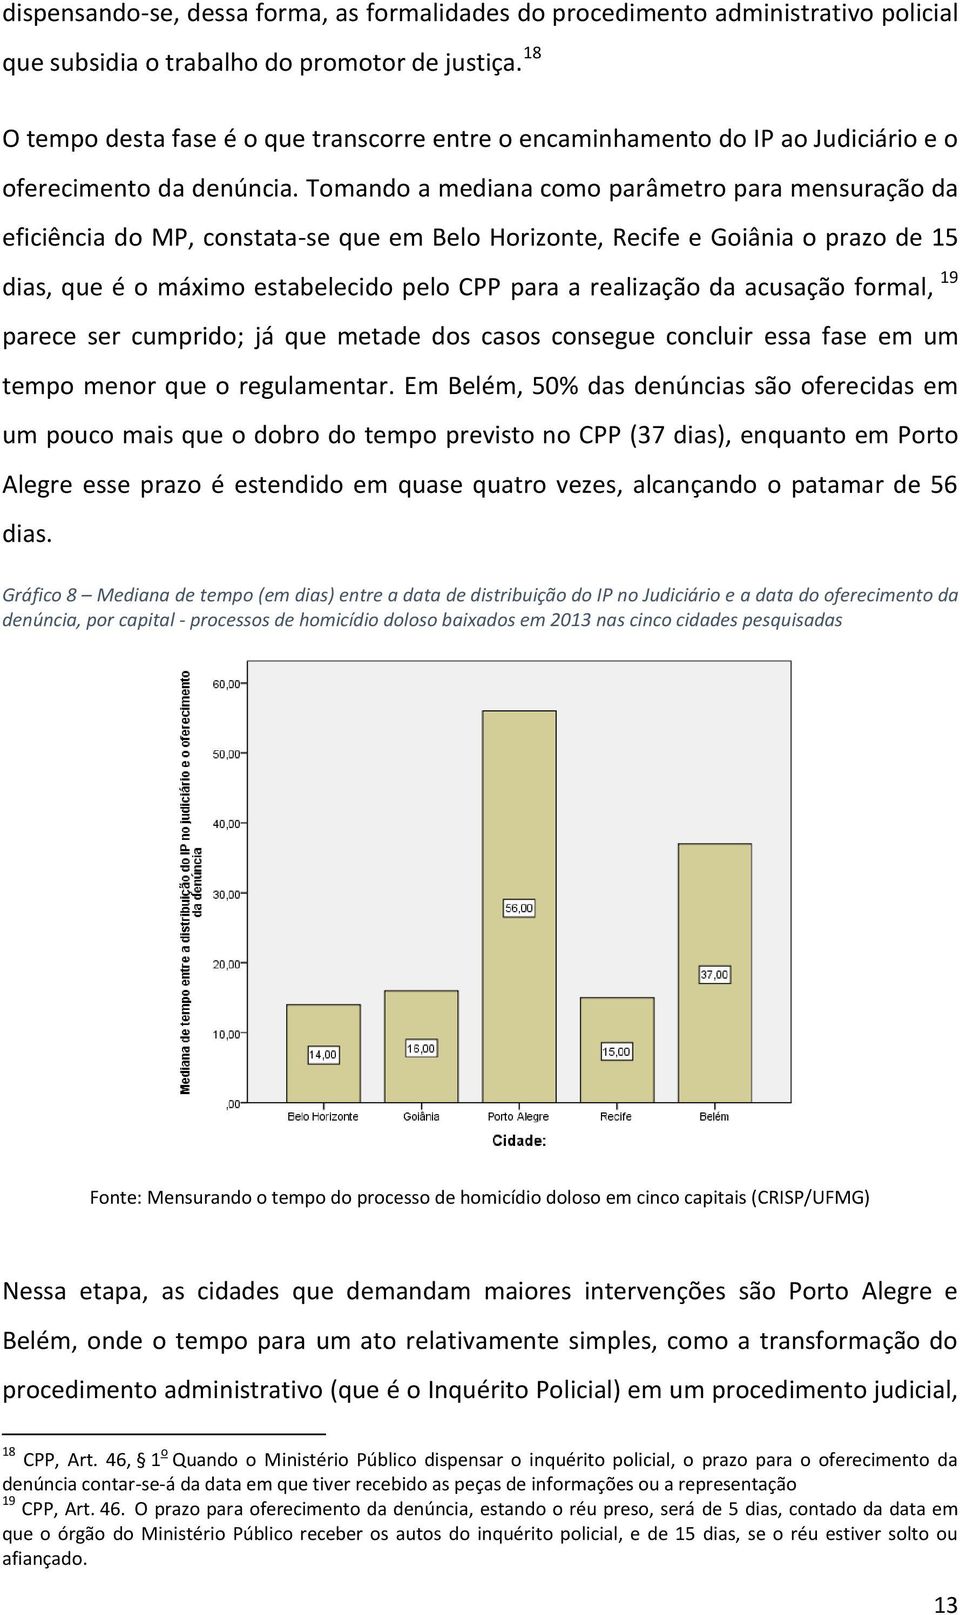 Tomando a mediana como parâmetro para mensuração da eficiência do MP, constata-se que em Belo Horizonte, Recife e Goiânia o prazo de 15 dias, que é o máximo estabelecido pelo CPP para a realização da